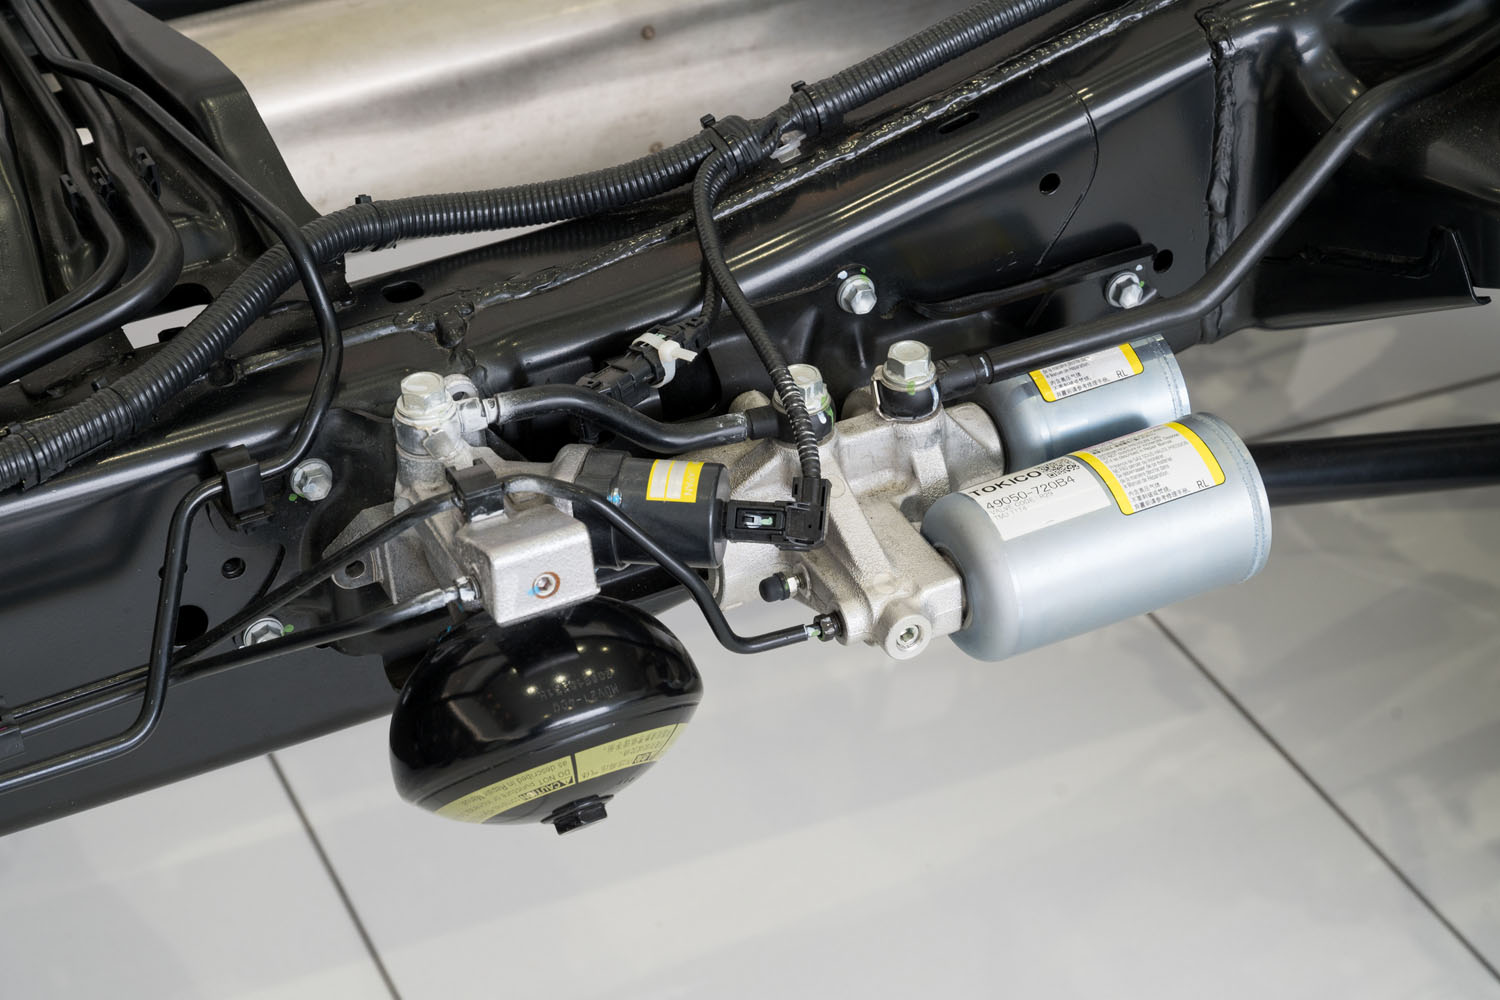 「AHC」で車高を昇降させる油圧システム。車高はドライブモードに応じて「Low」「High1」「High2」の3段階で切り替わり、また車体の姿勢変化に応じて、リアルタイムでスプリングレートを調整する機能も備わっている。